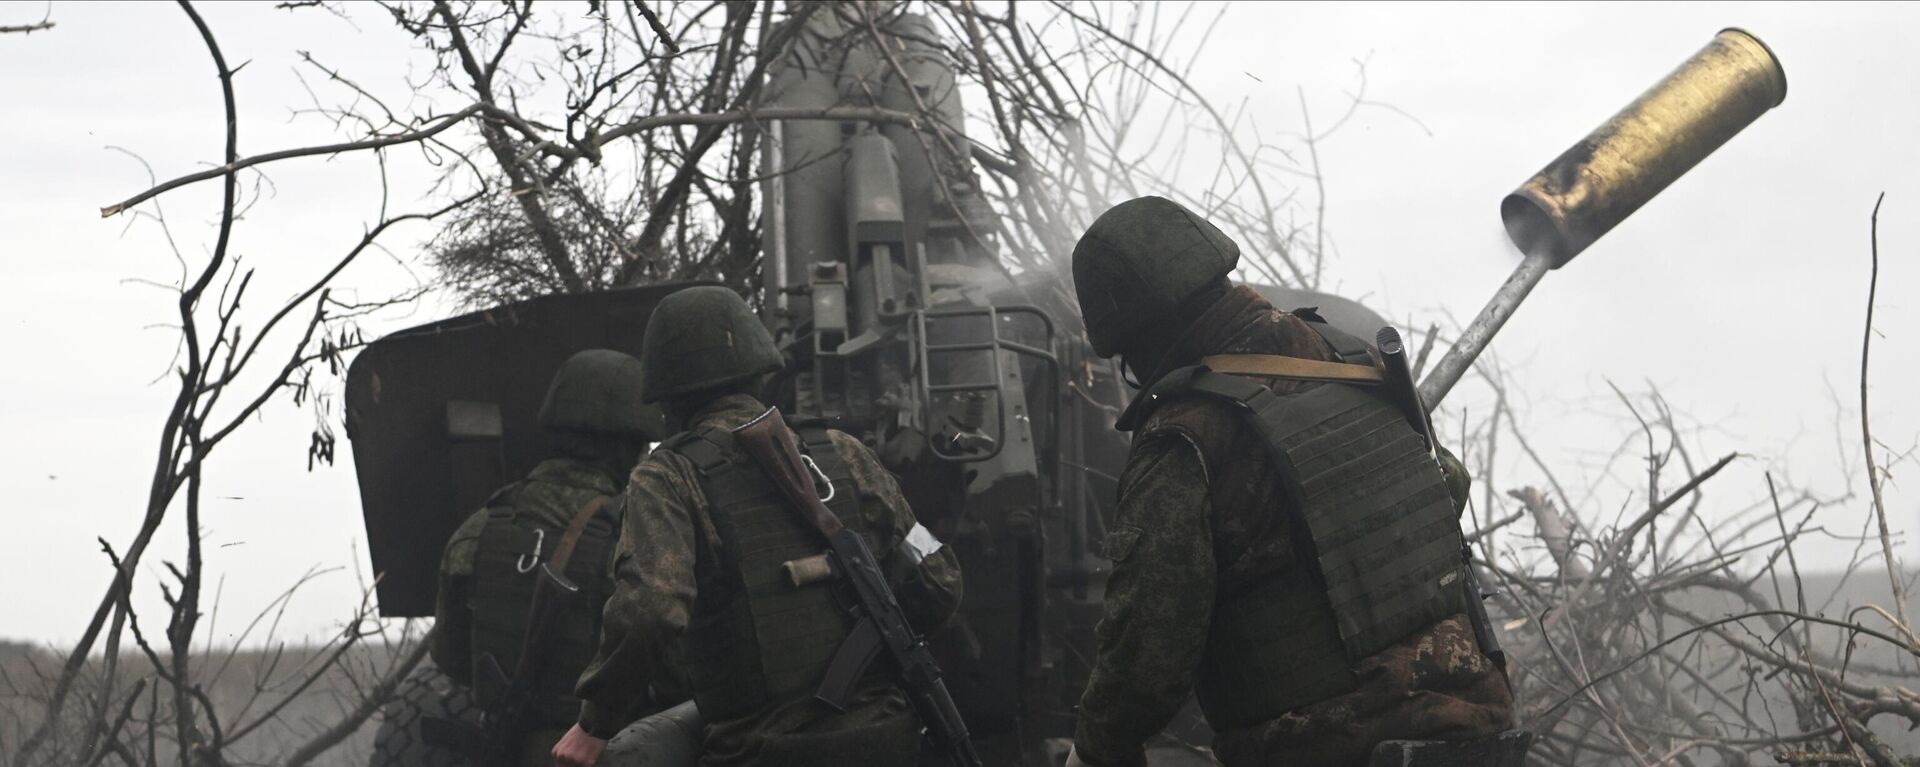 مدفعية القوات المسلحة الروسية تطلق النار على مواقع القوات المسلحة الأوكرانية من مدفع هاوتزر مستا-بي في المنطقة الجنوبية من منطقة العملية العسكرية الخاصة في أوكرانيا - سبوتنيك عربي, 1920, 21.04.2023